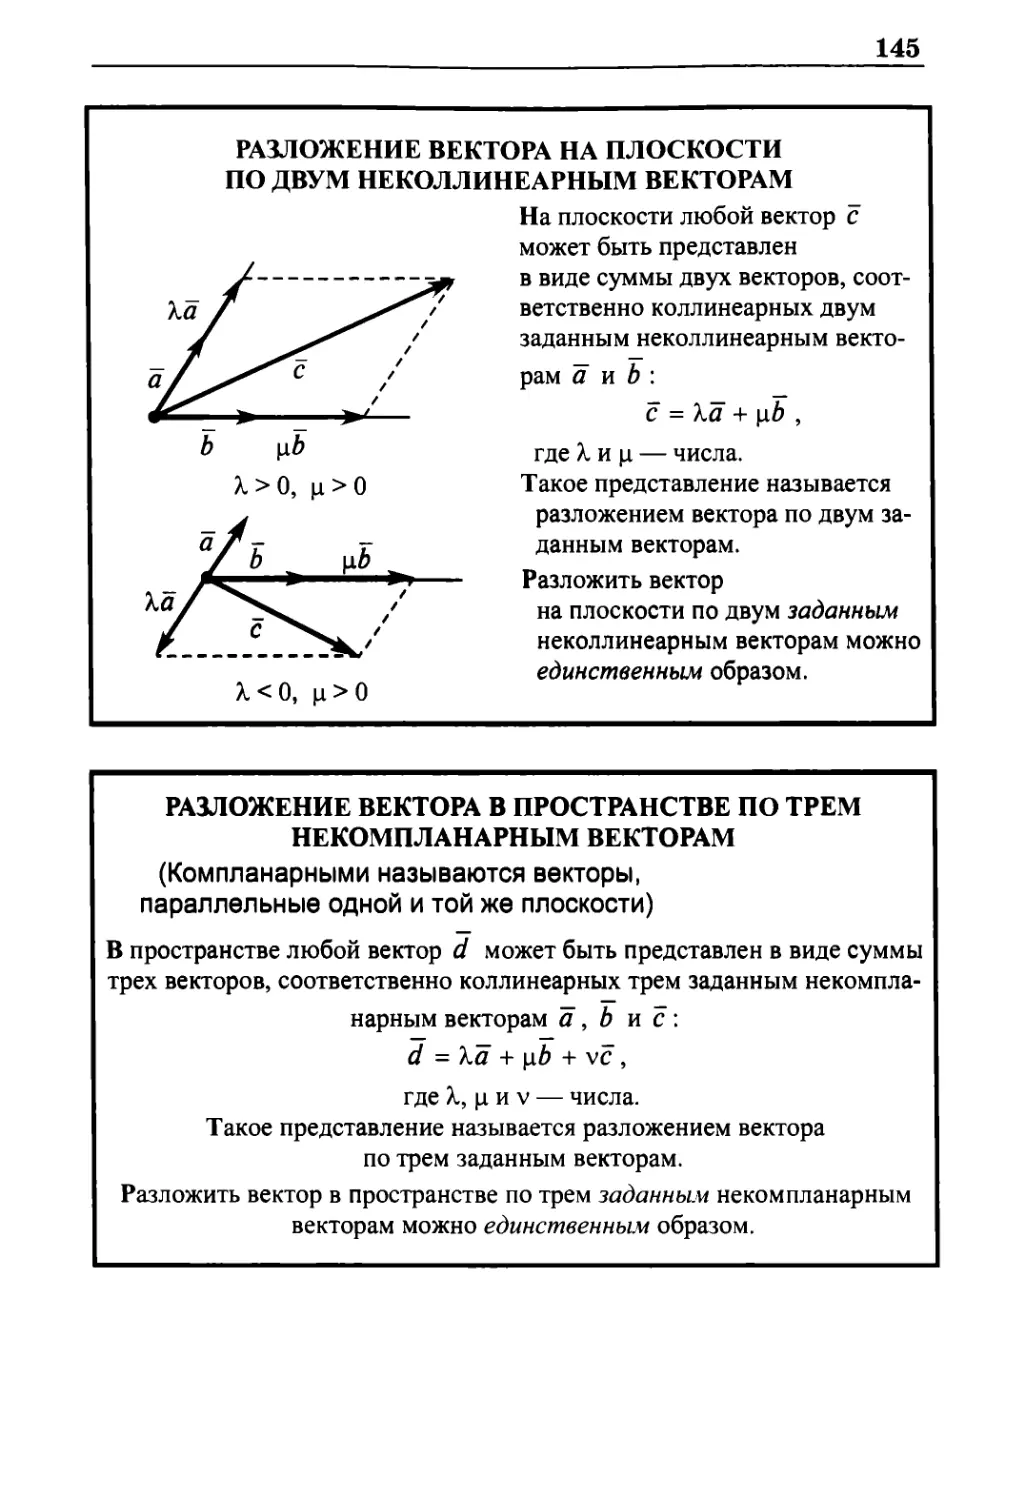 Разложение вектора на плоскости по двум неколлинеарным векторам
Разложение вектора в пространстве по трем некомпланарным векторам